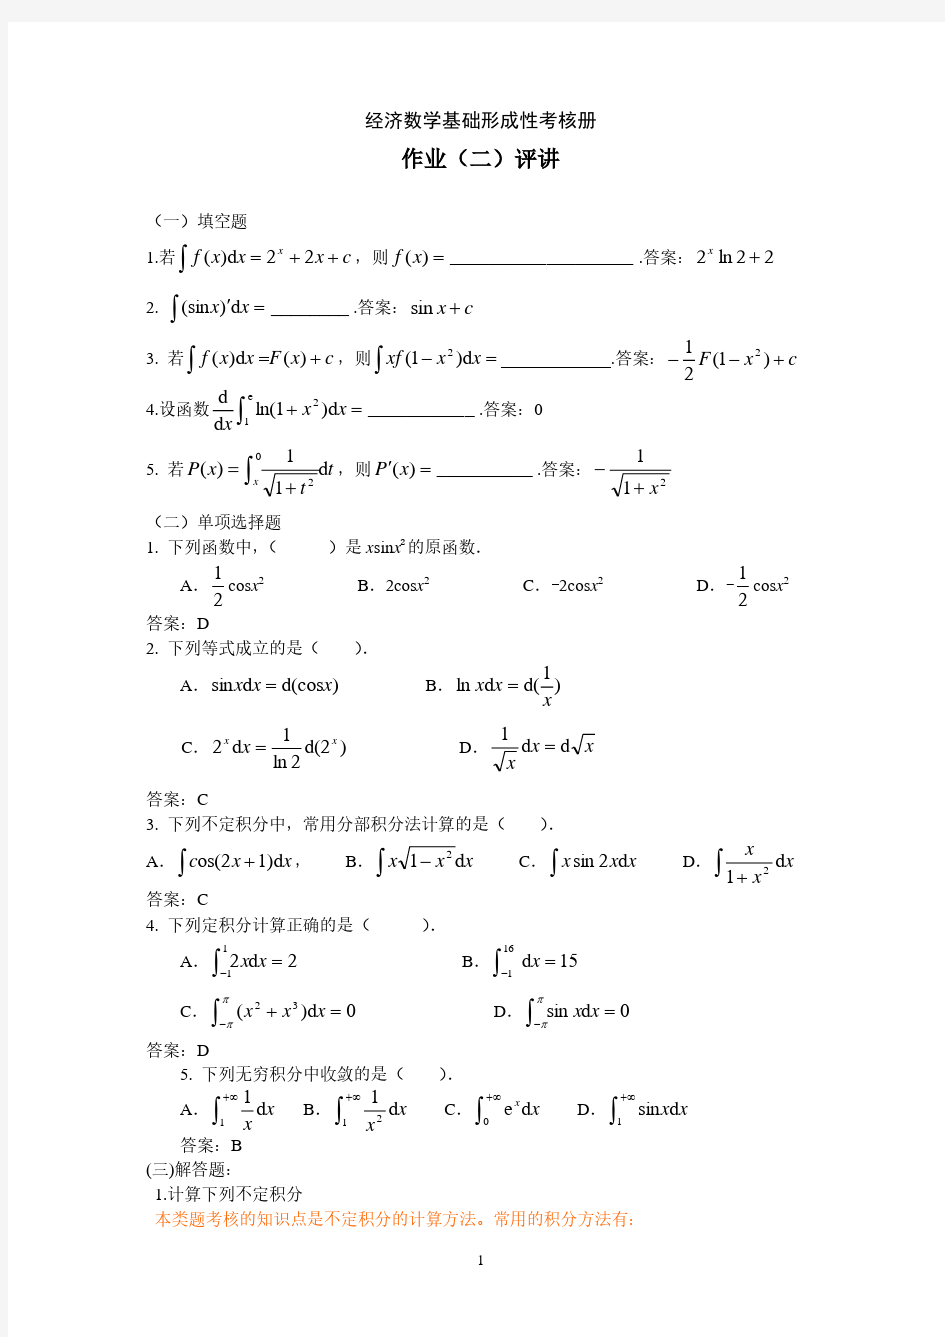 经济数学基础作业2(2020年10月整理).pdf